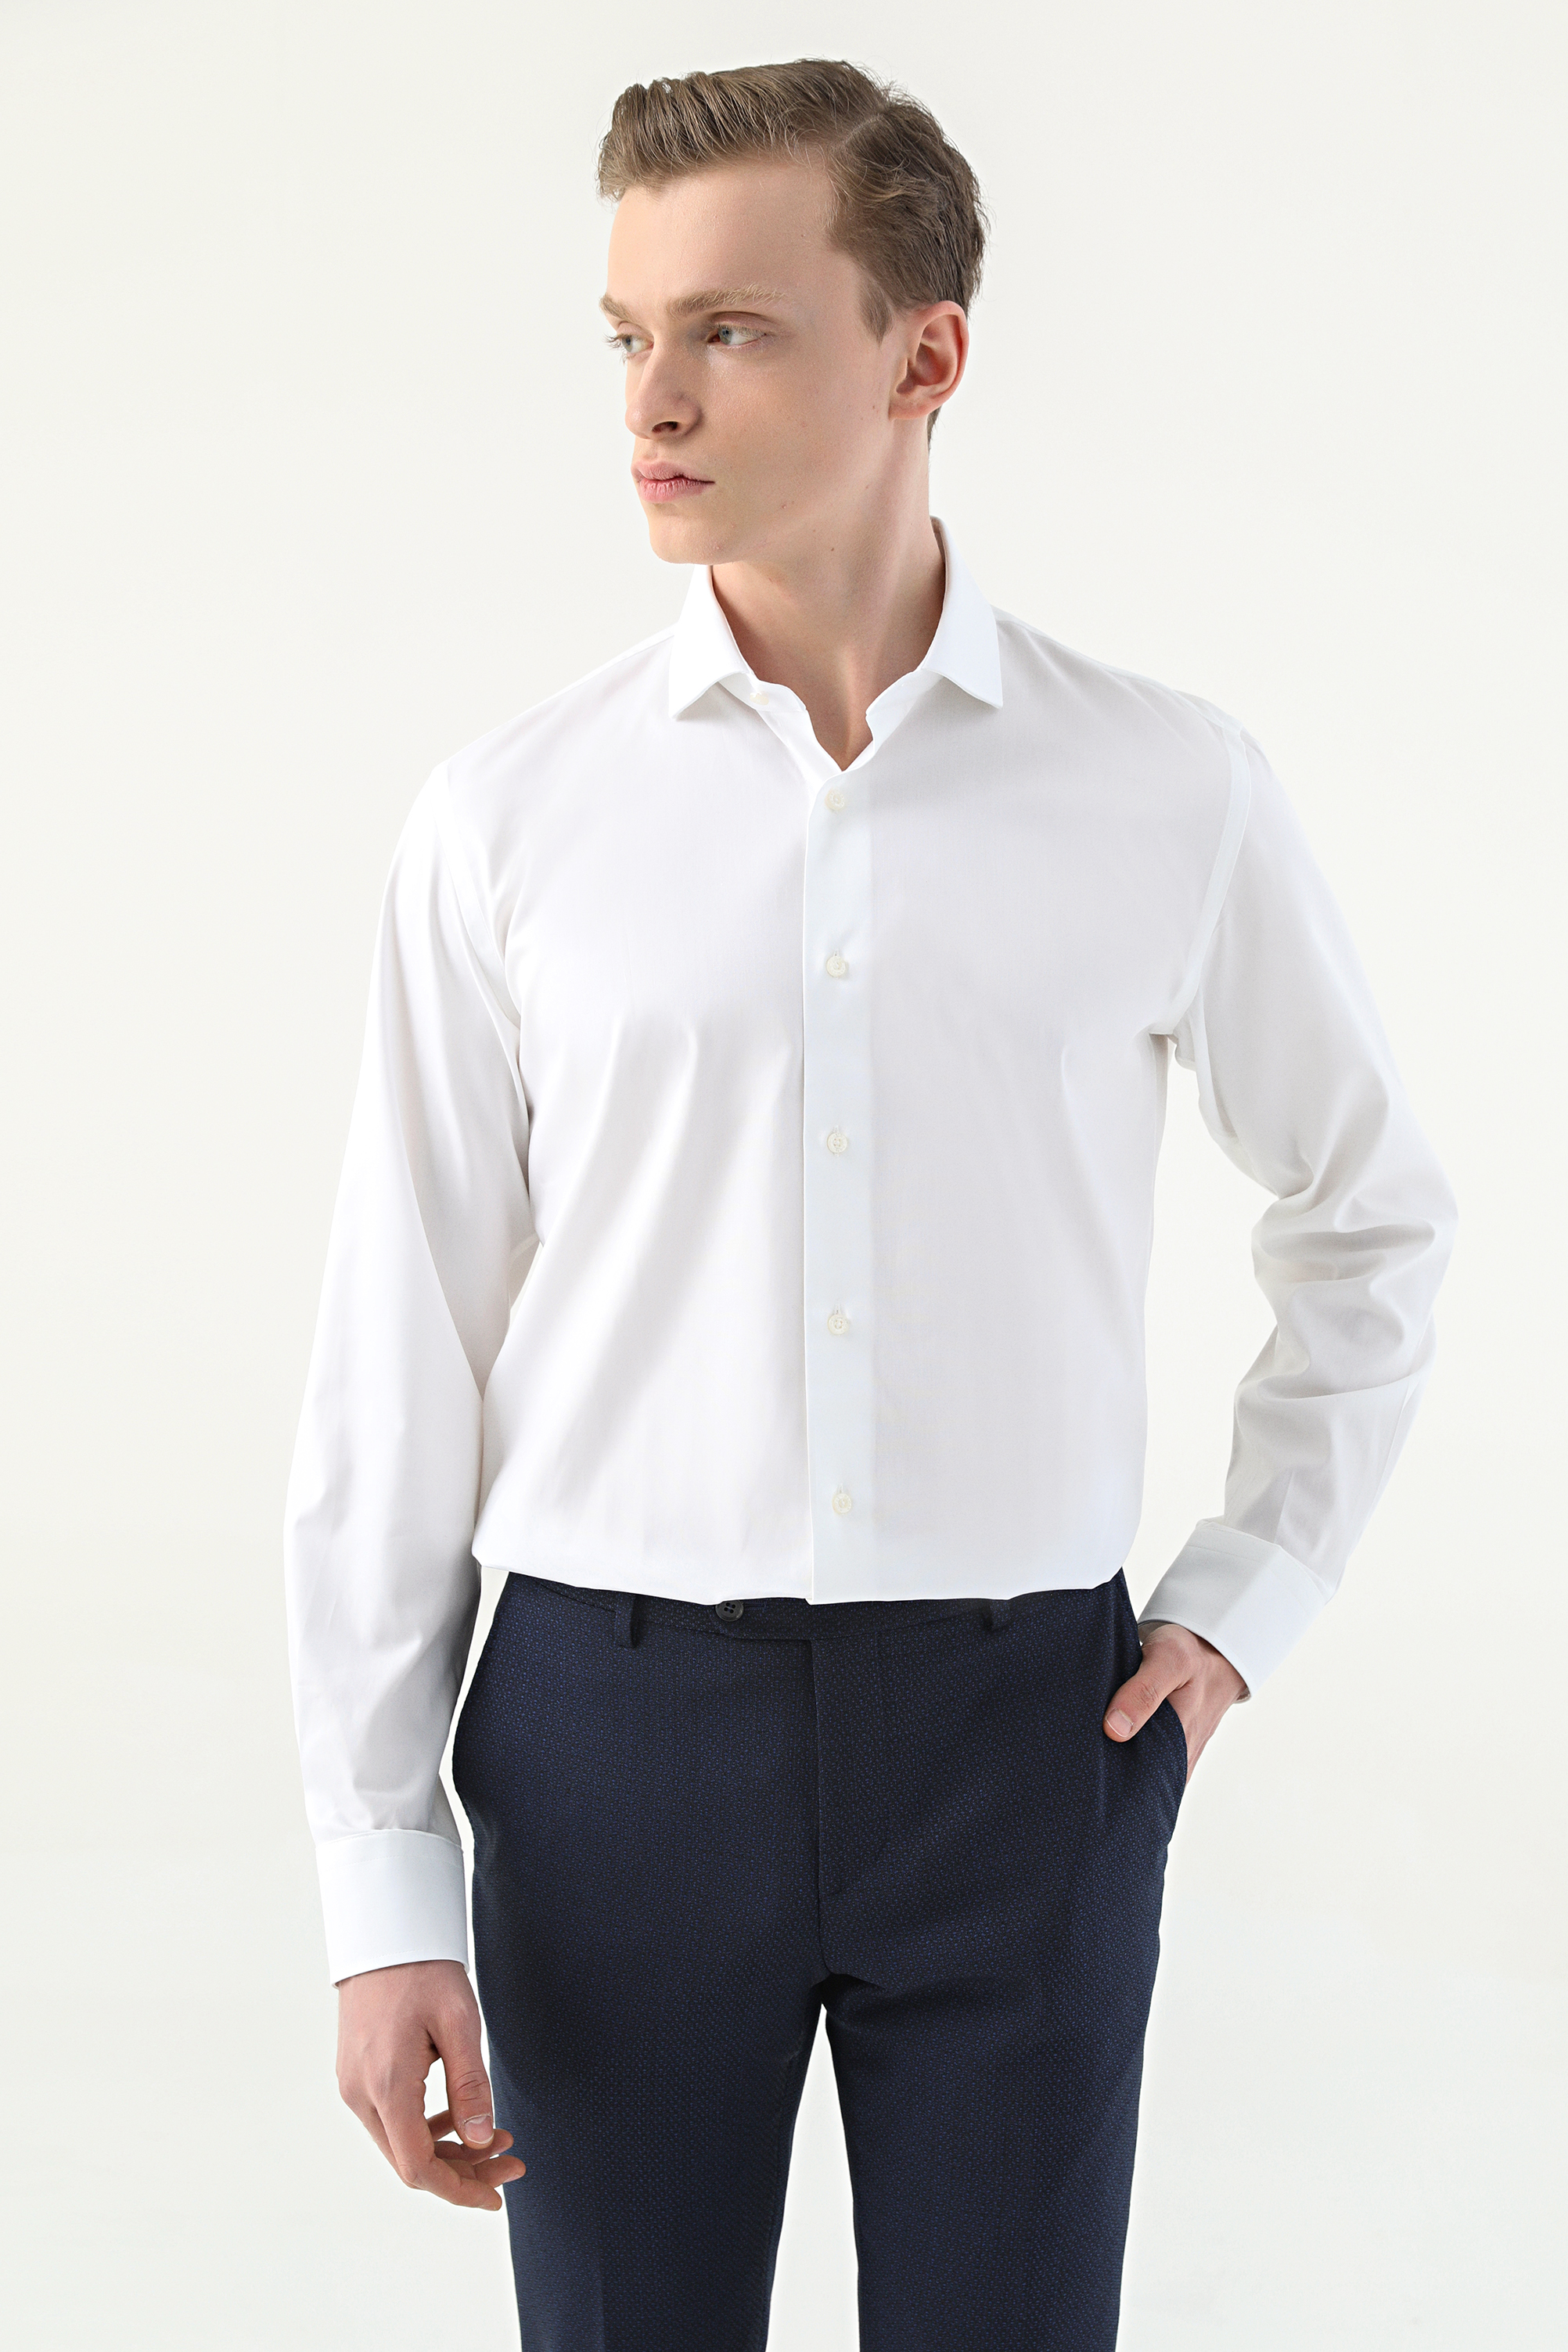 Damat Tween Damat Slim Fit Beyaz Desenli Nano Care Gömlek. 1